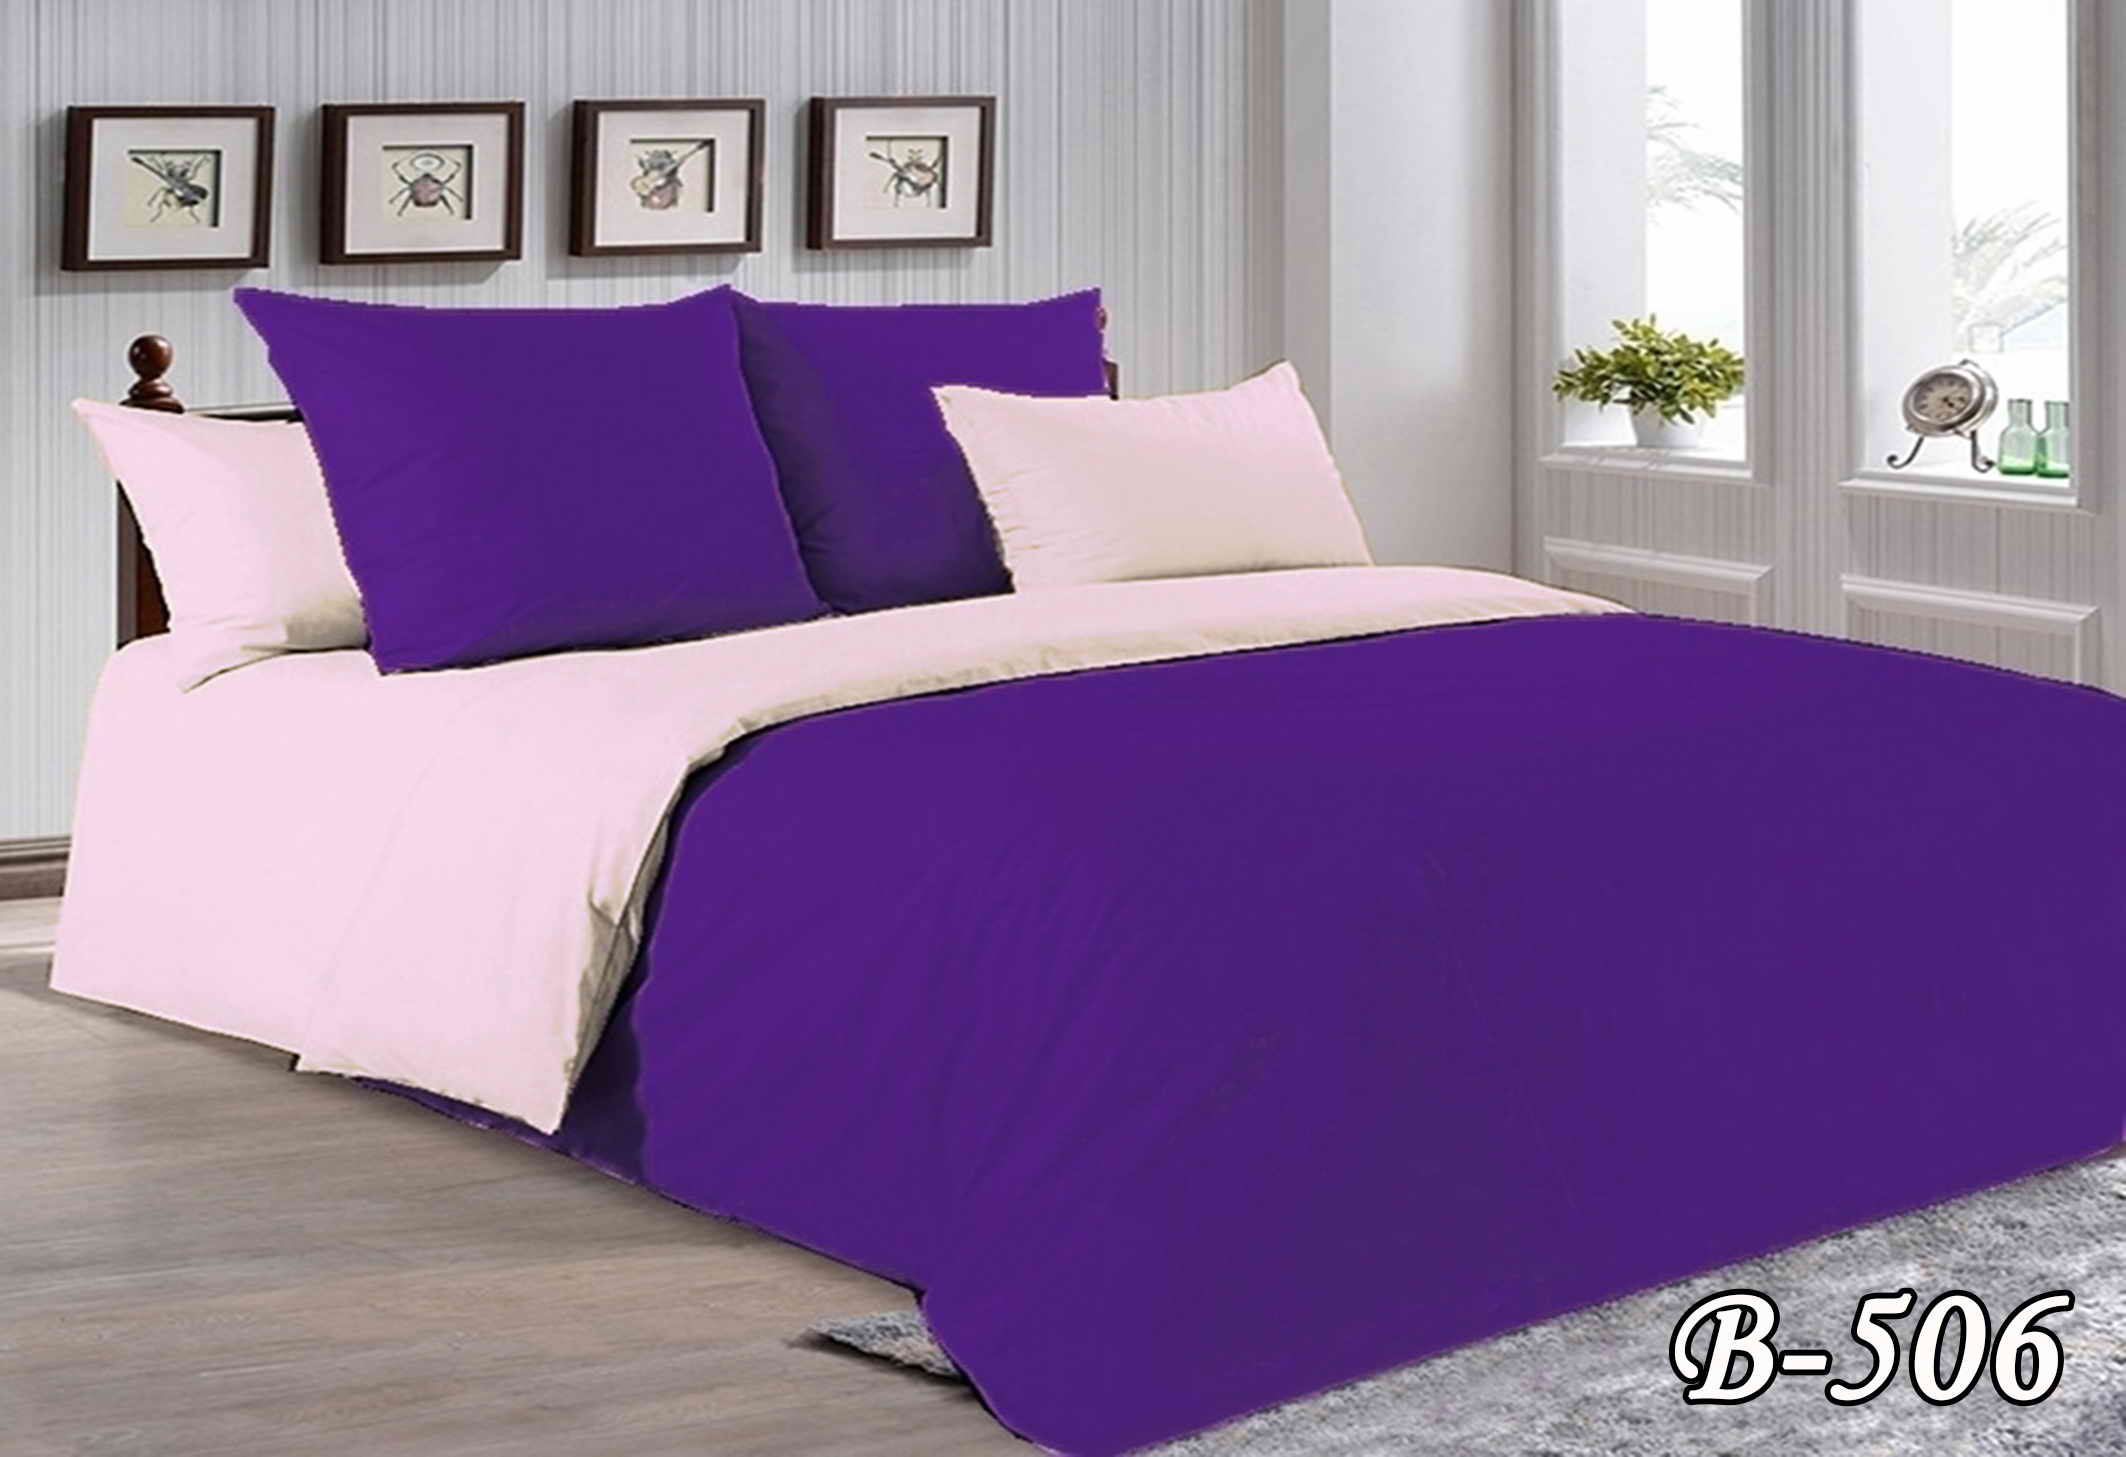 Полуторное постельное белье Тет-А-Тет П-506 "Фиолетовый"